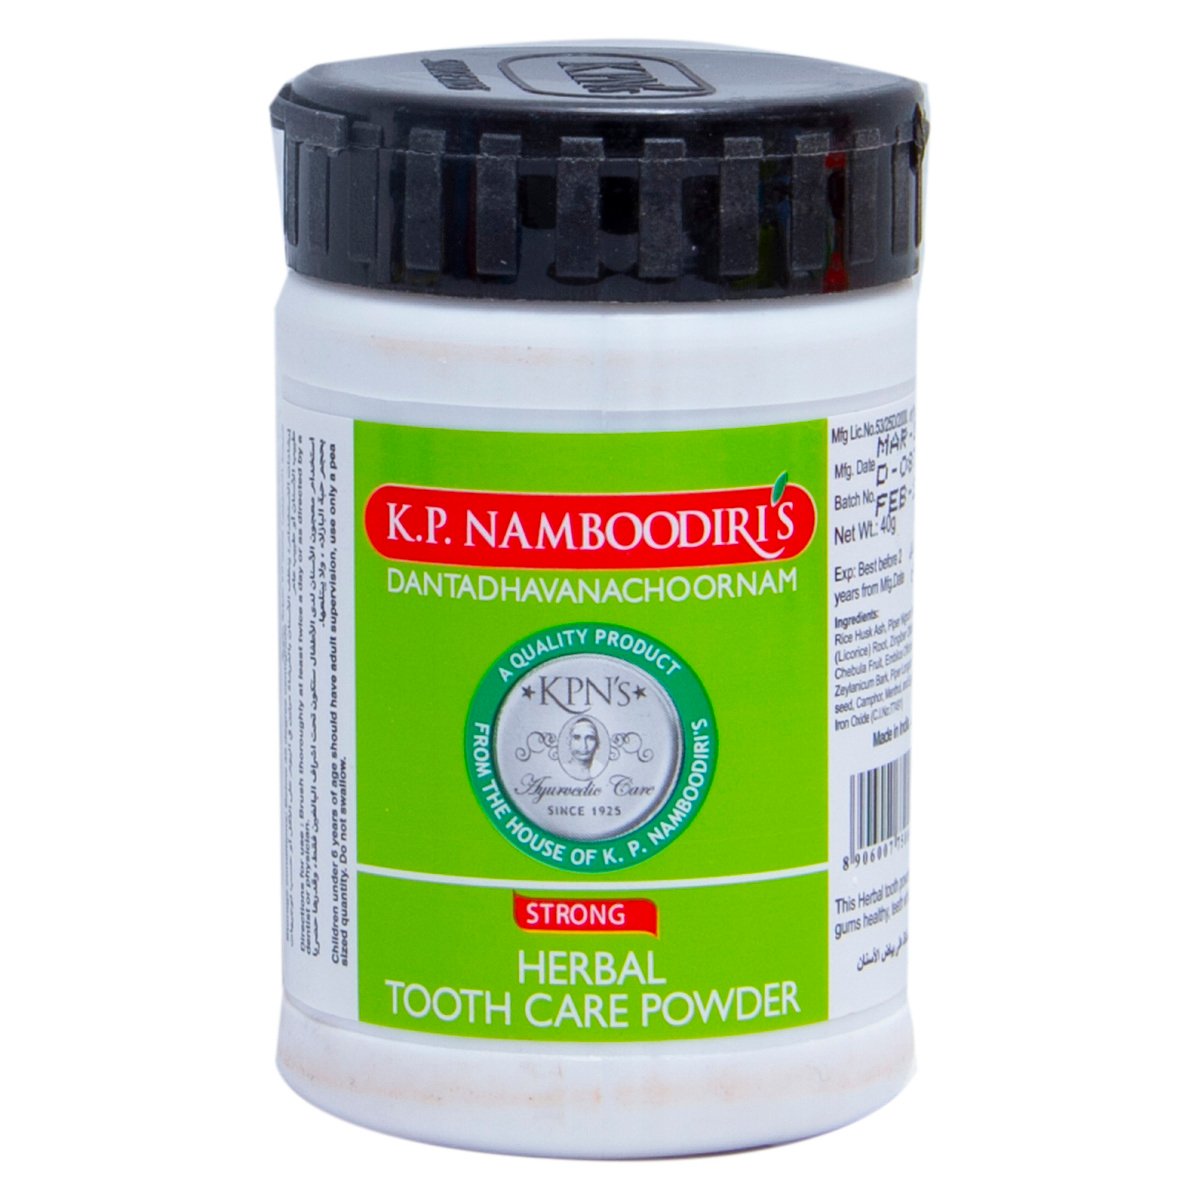 K.P Namboodiris Herbal Tooth Care Powder 40g